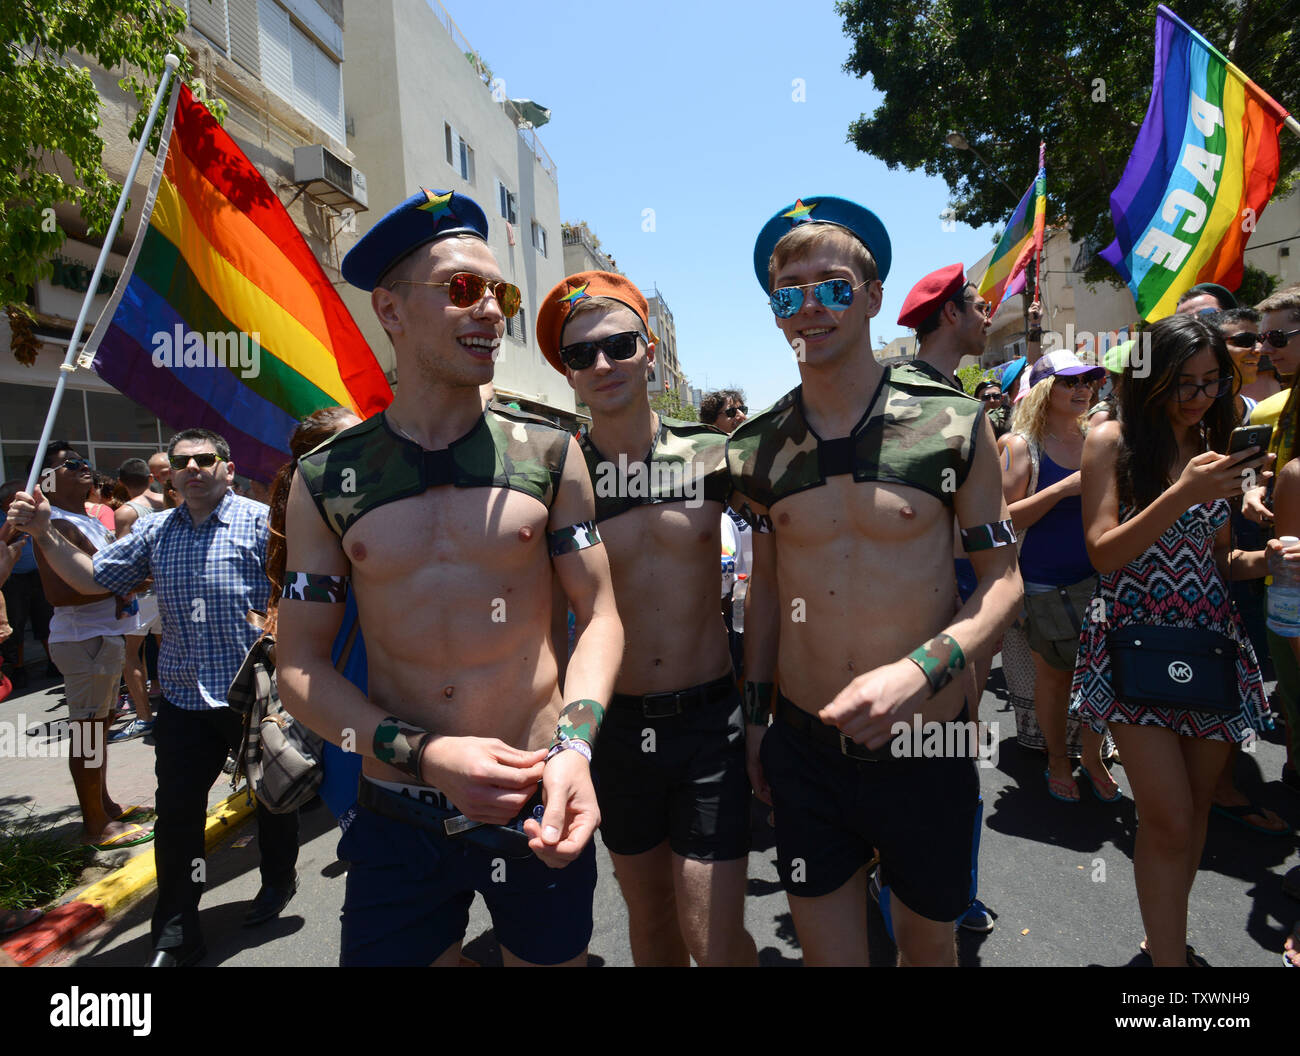 Homosexuelle Touristen tragen Kostüme in der 17. jährliche Gay Pride Parade in Tel Aviv, Israel, 12. Juni 2015. Mehr als 180.000 demonstrierten in die Parade, darunter 30.000 Touristen. Das Thema der Parade war "Tel Aviv liebt alle Geschlechter" in eine gleiche Rechte der Mitglieder Die transgender Community zu fördern. Foto von Debbie Hill/UPI Stockfoto